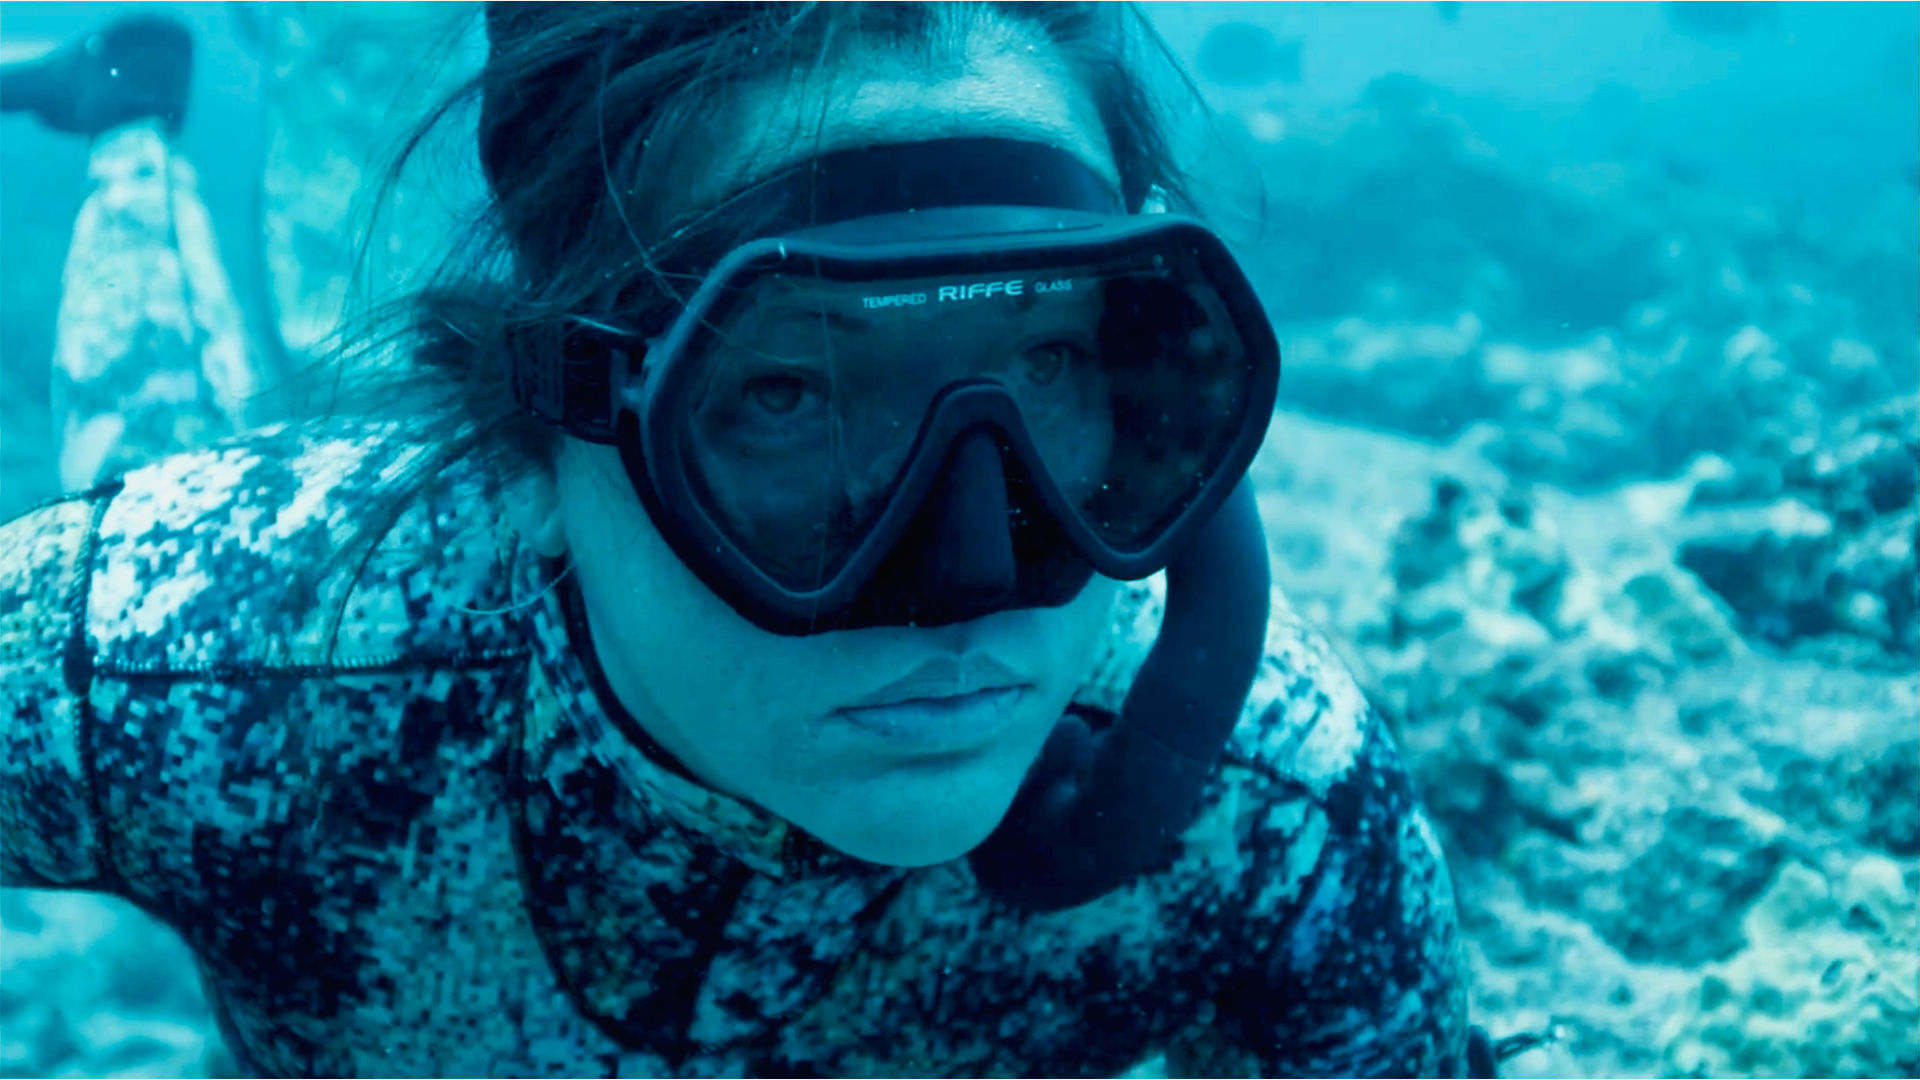 Kimi Werner diving underwater wearing Sea-Doo branded gear